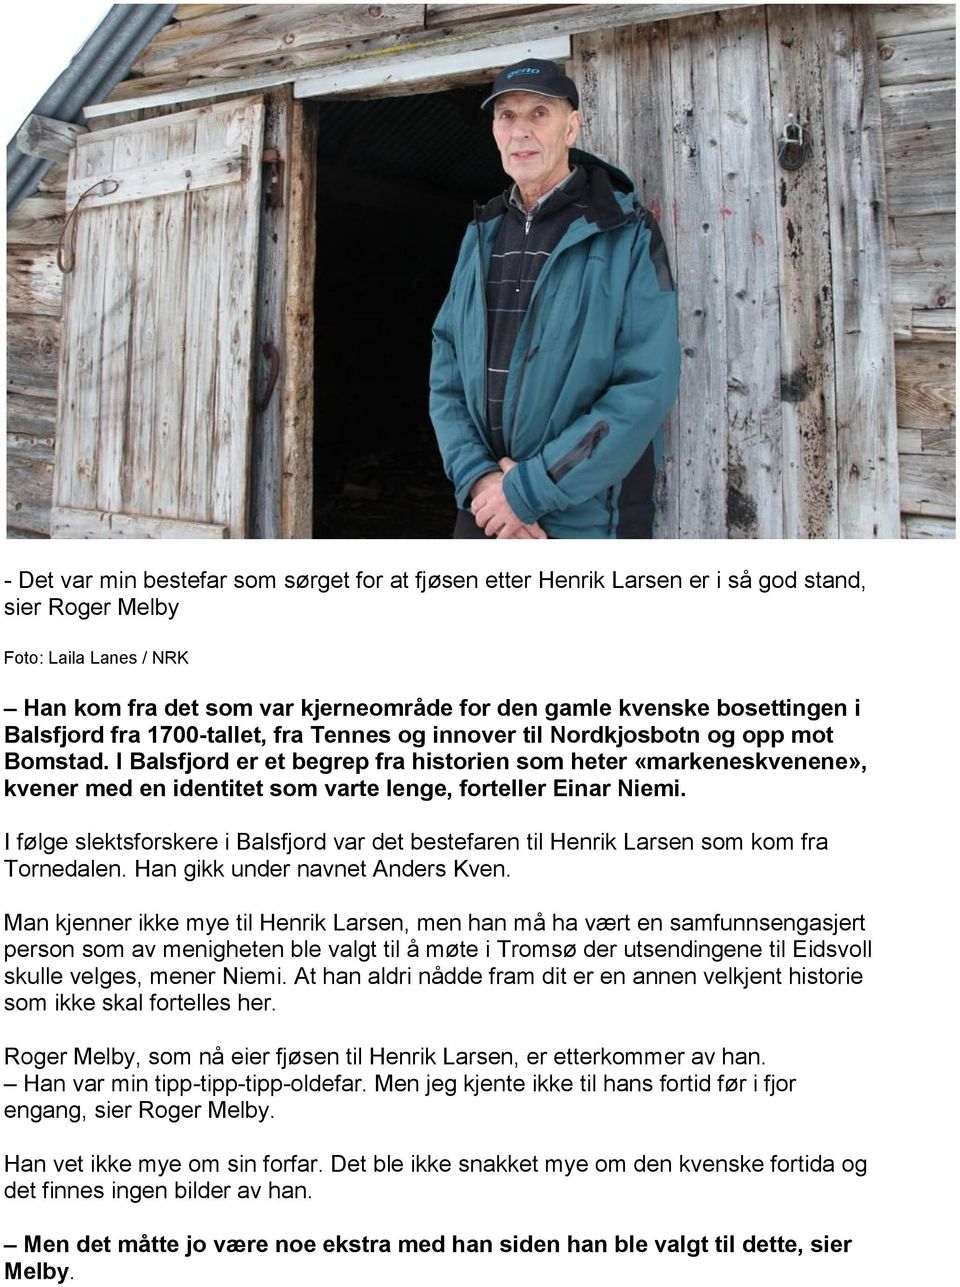 I Balsfjord er et begrep fra historien som heter «markeneskvenene», kvener med en identitet som varte lenge, forteller Einar Niemi.